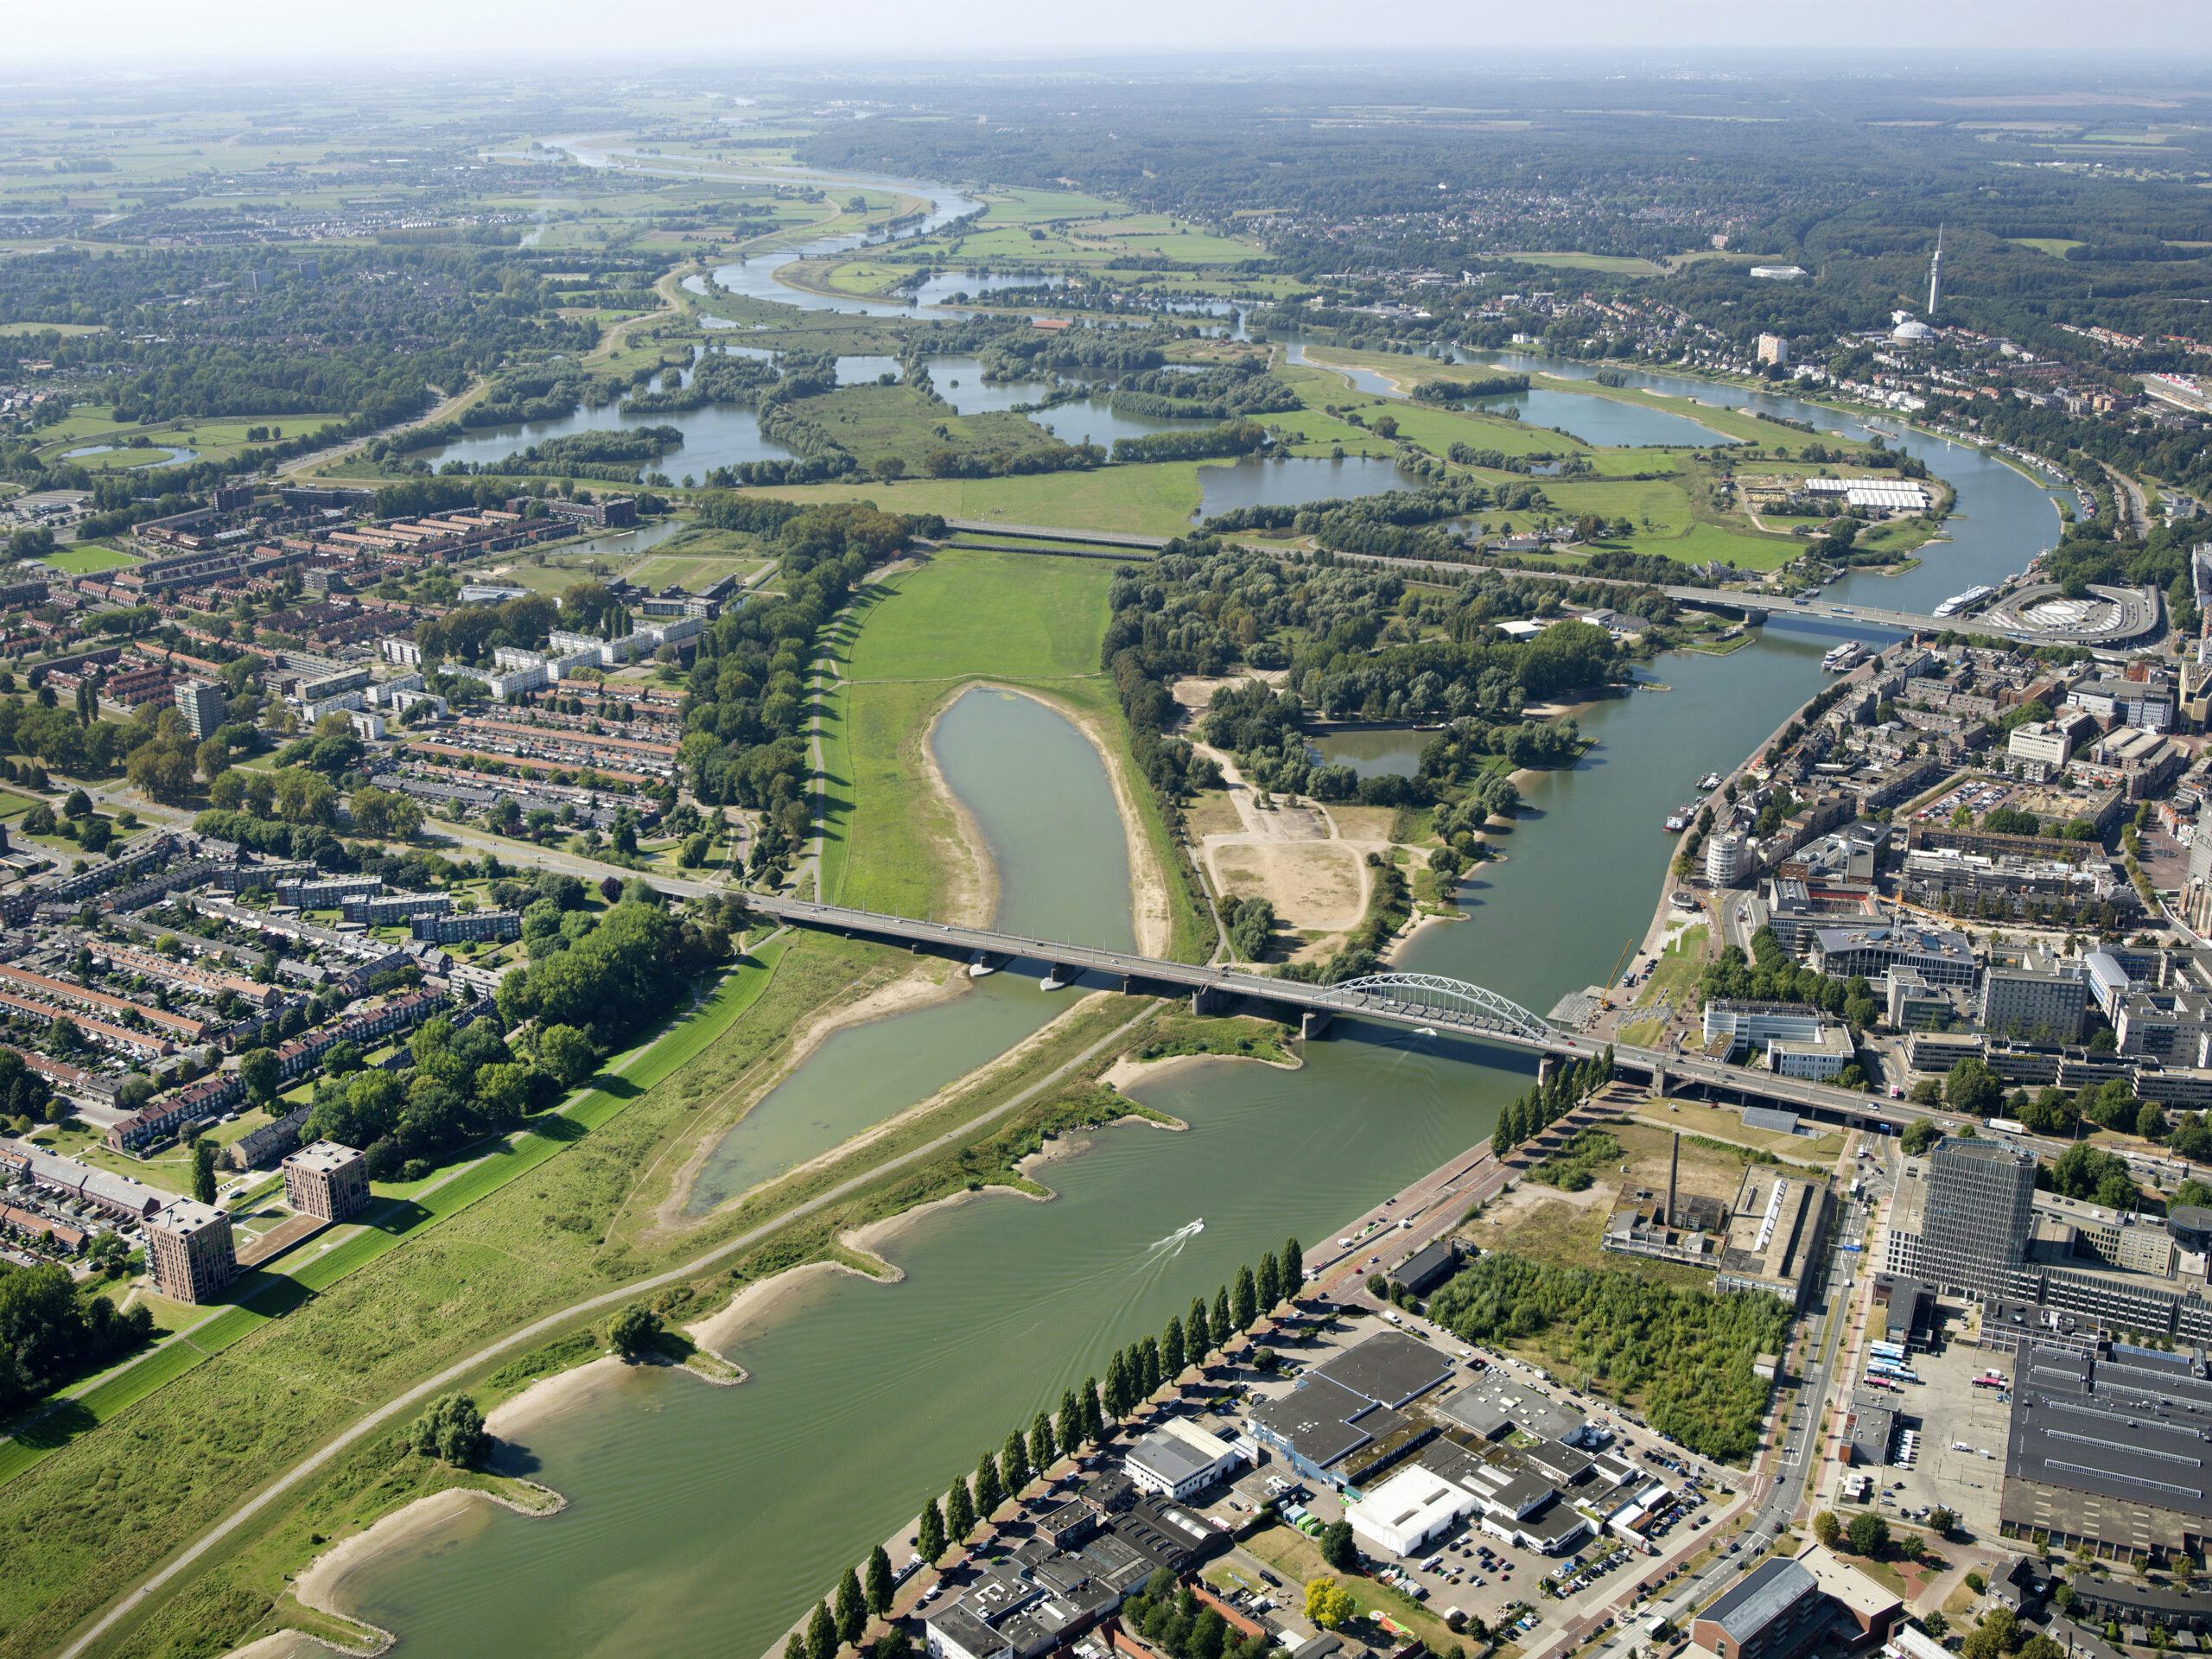 Overzicht van Meinerswijk in Arnhem, met Stadsblokken ingeklemd tussen de twee bruggen en het natuurgebied op de achtergrond. Beeld Buroharro